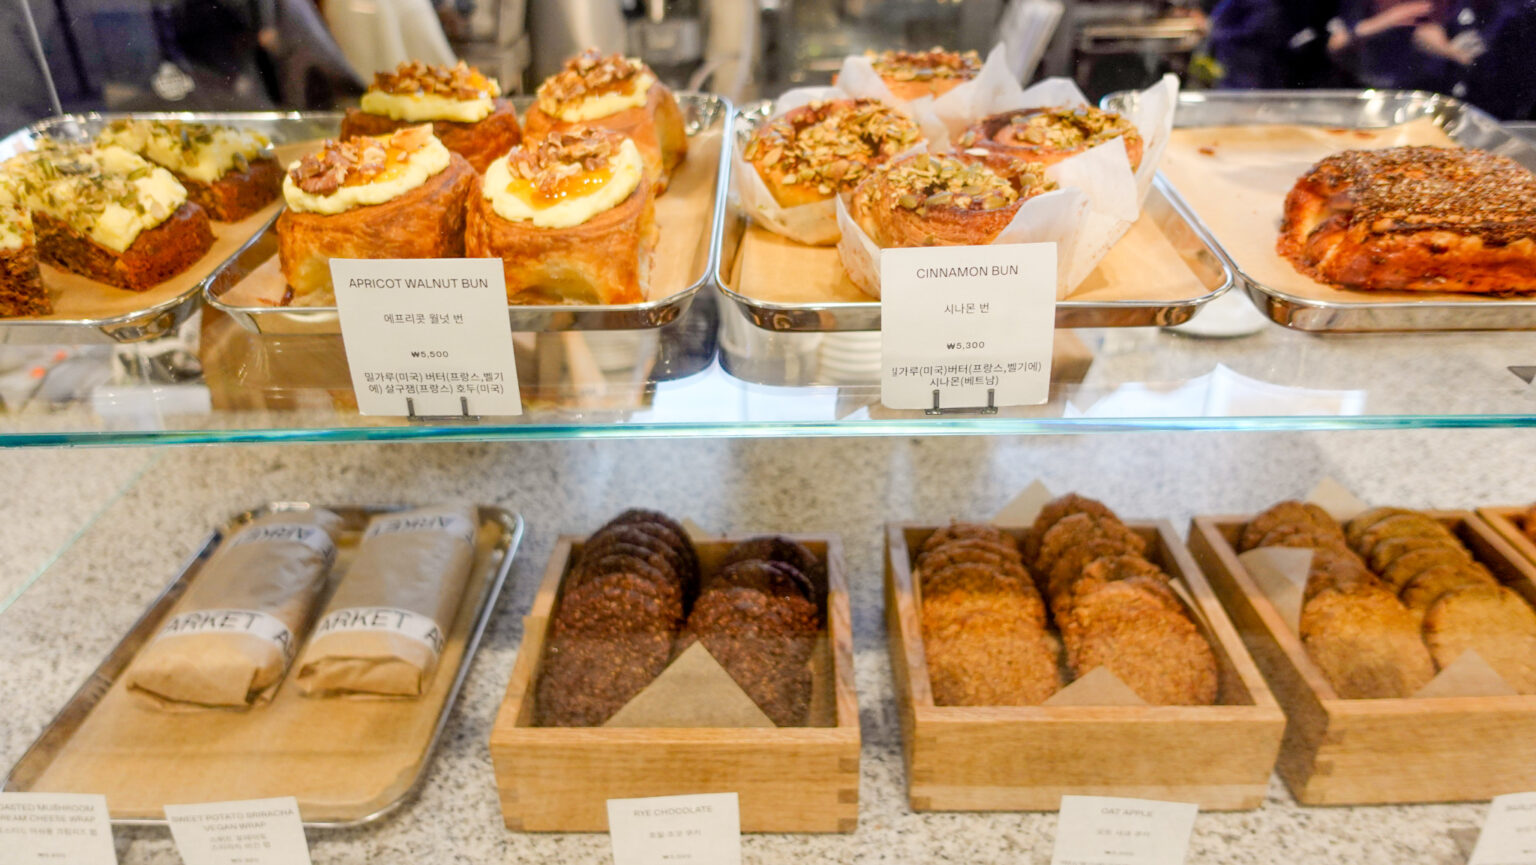 カフェのショーウィンドウには、おいしそうなパンたちが並ぶ。